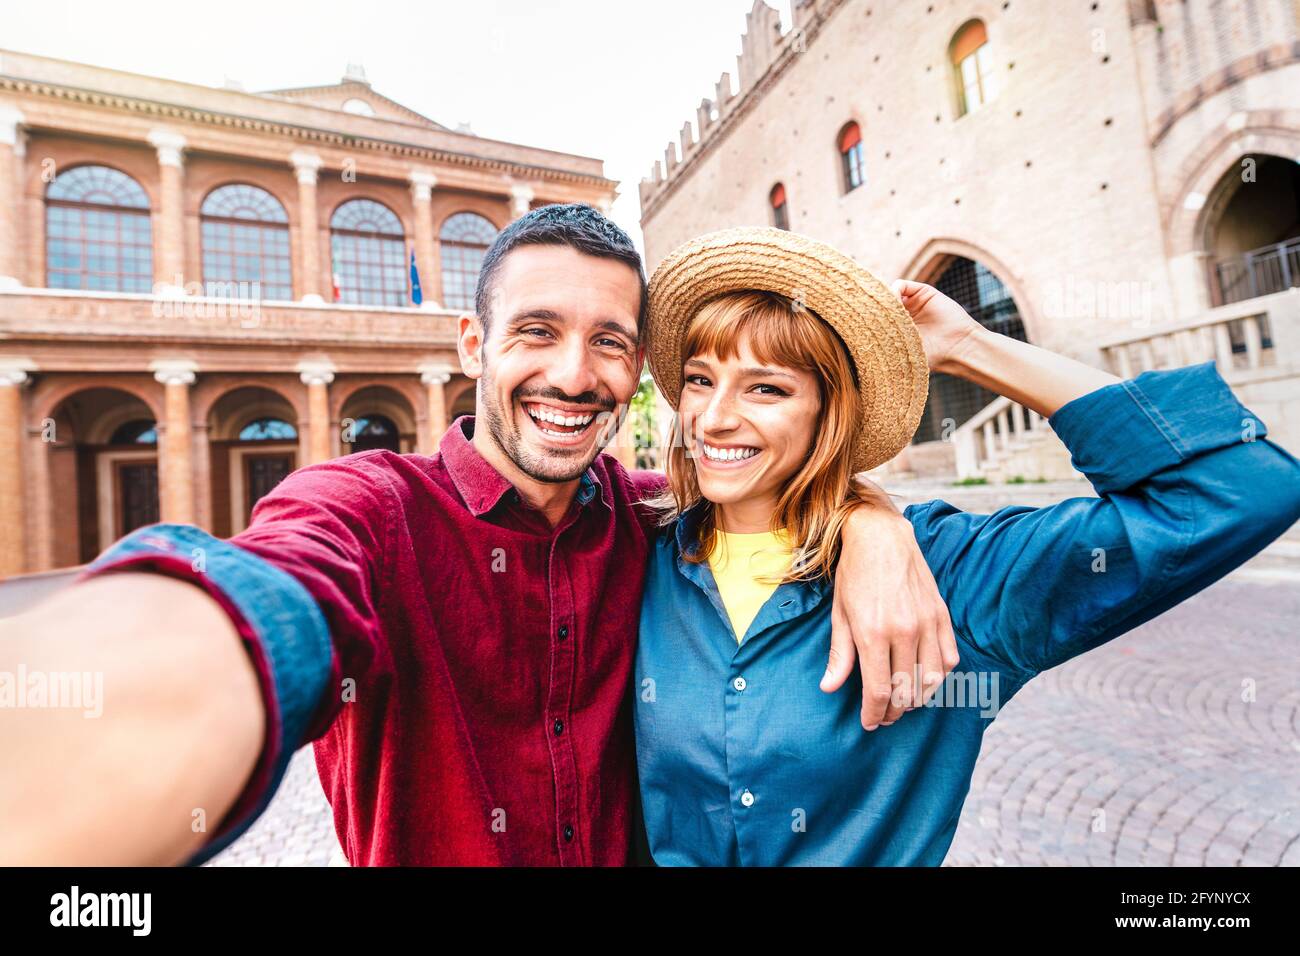 Petit ami et petite amie amoureux s'amuser à prendre le selfie à la vieille ville - Wanderlust concept de voyage style de vie avec couple touristique Banque D'Images